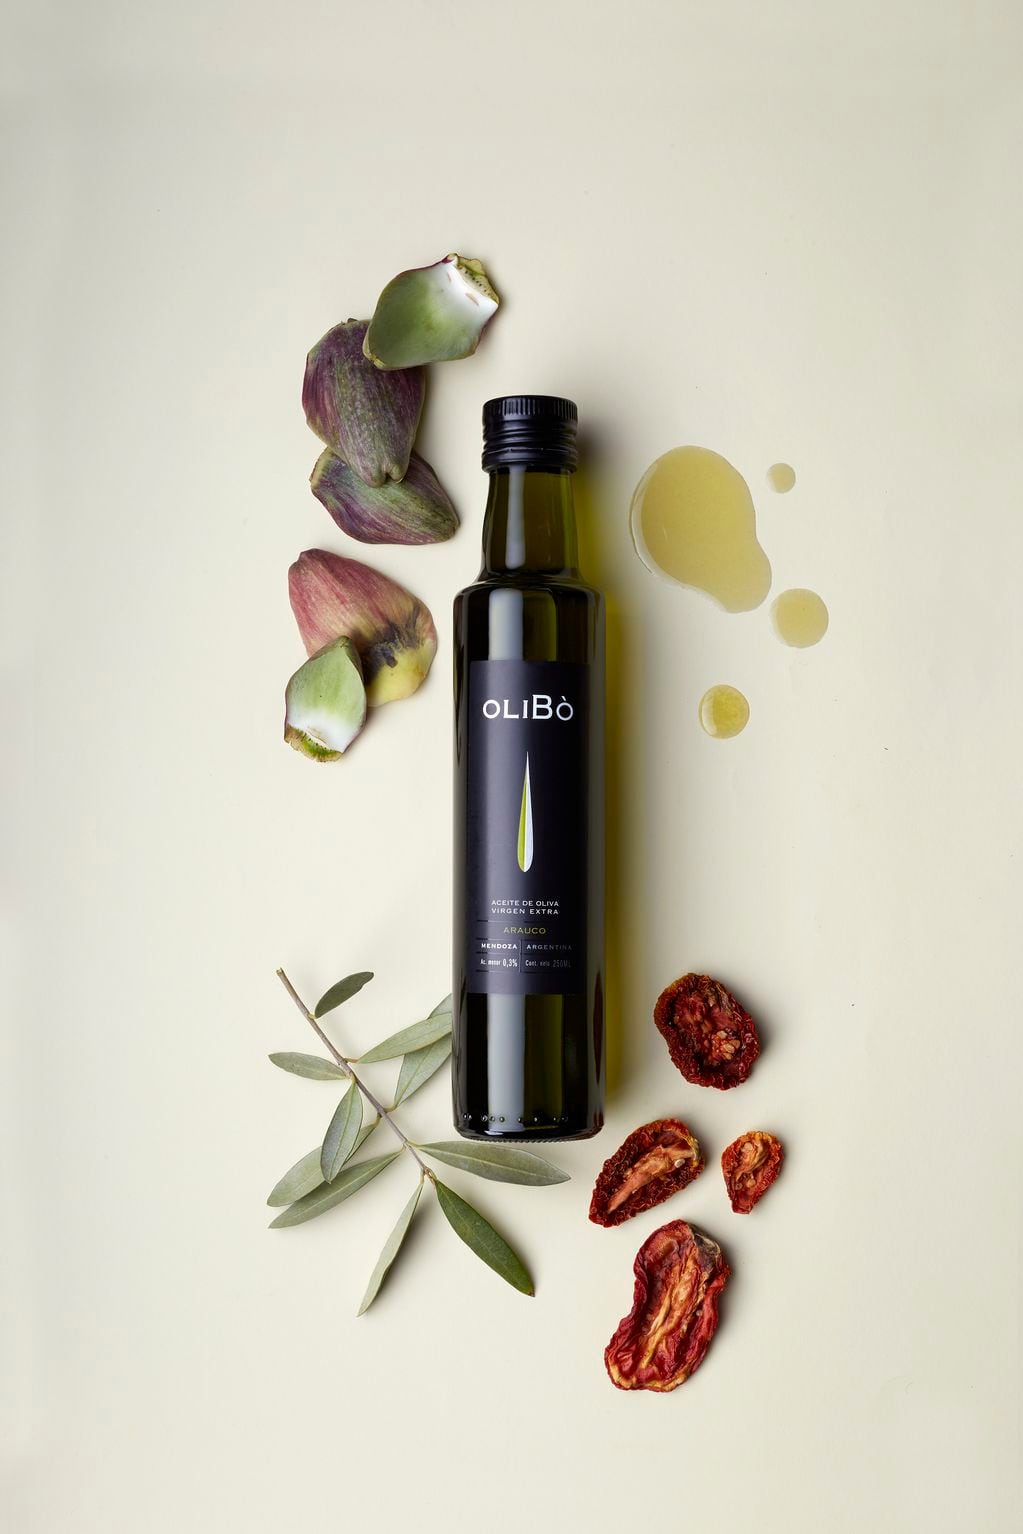 OliBó aceite de oliva virgen extra destaca el impacto económico de la olivicultura en Mendoza.